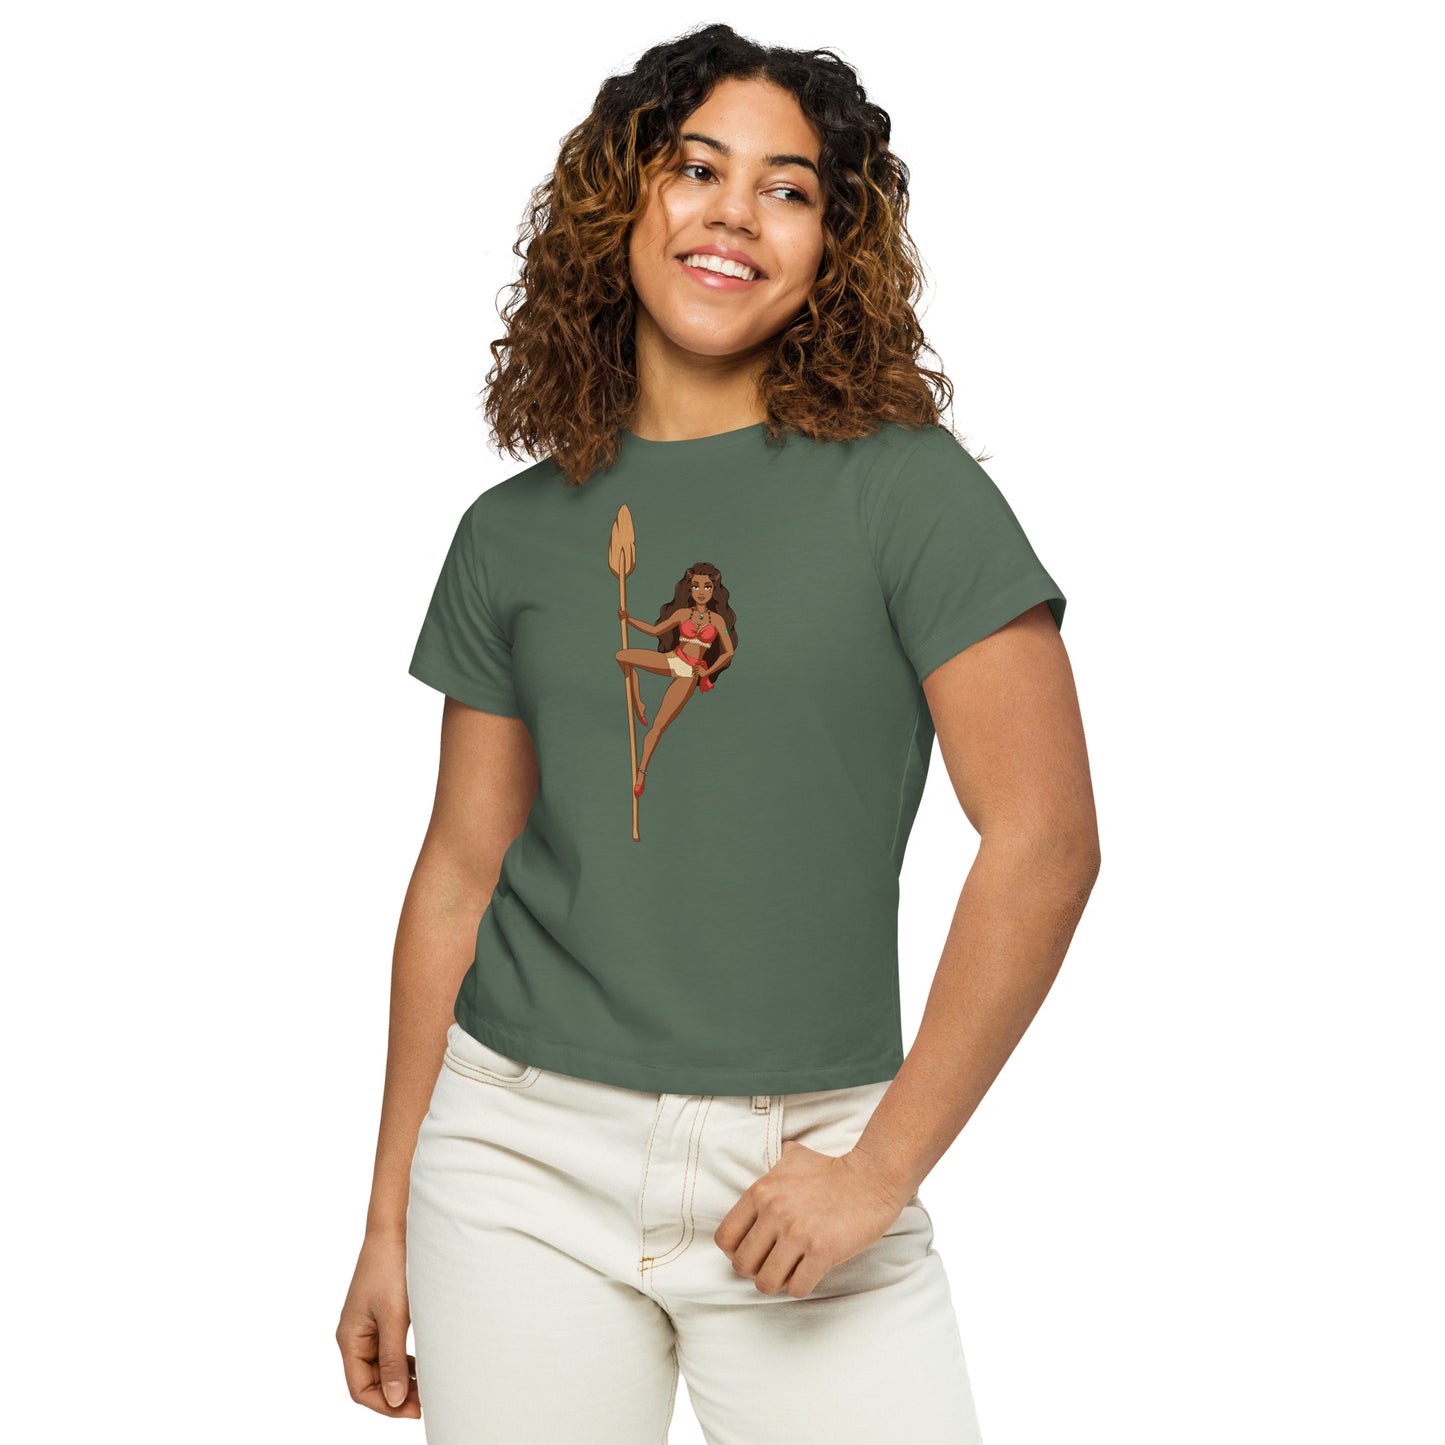 Cupid - Women’s high-waisted t-shirt